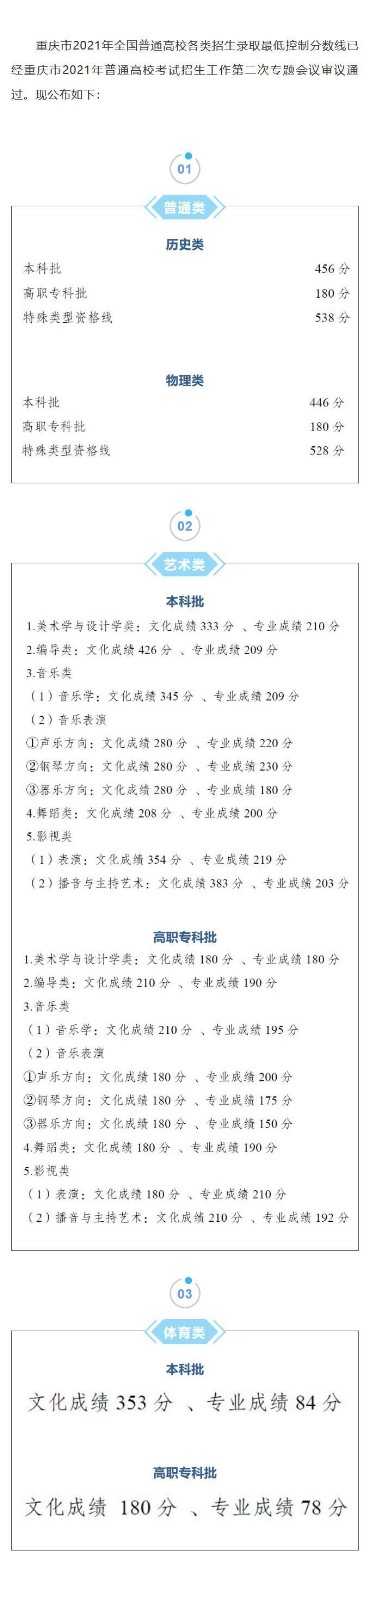 2021重庆高考分数线公布通知